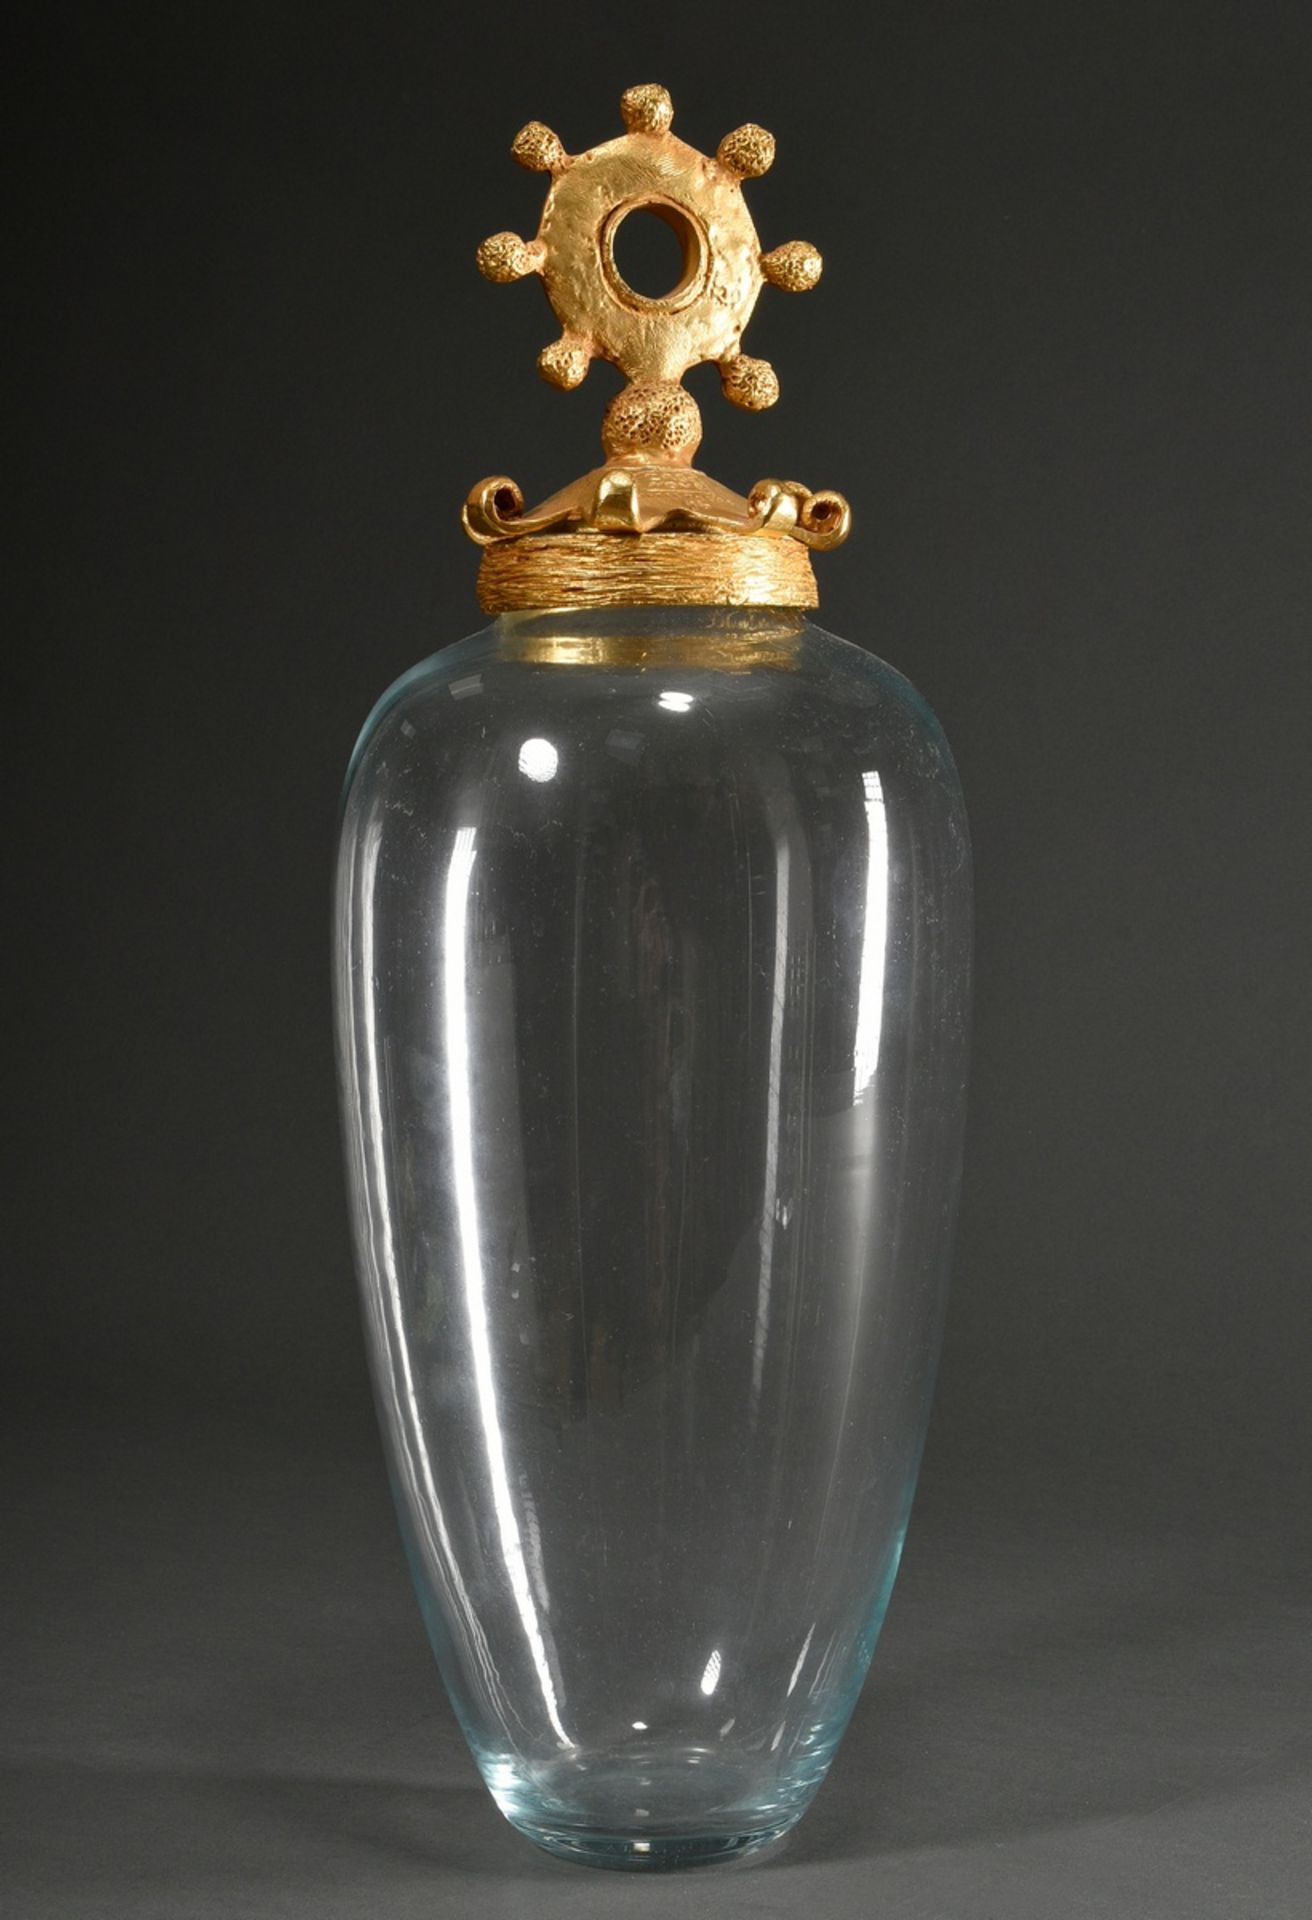 Casenove, Pierre (*1943) Kristall Vase in ovoider Form mit zoomorphem Deckel, Metall vergoldet, sig - Bild 2 aus 5